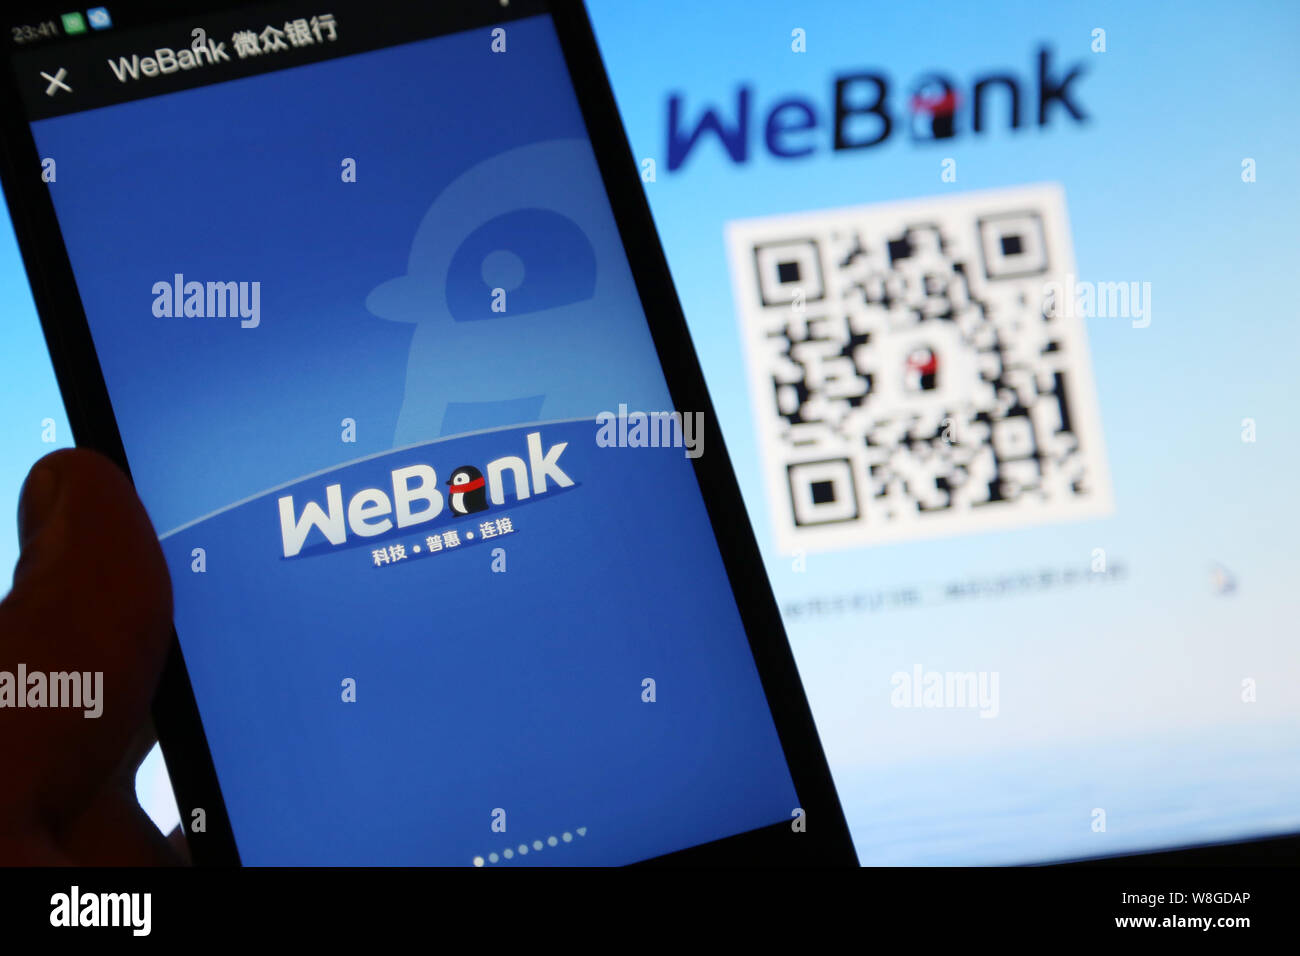 Un résident chinois locaux le service de tests bancaires chinois banque en ligne WeBank sur son smartphone à Shanghai, Chine, 18 janvier 2015. La grande Chine Banque D'Images